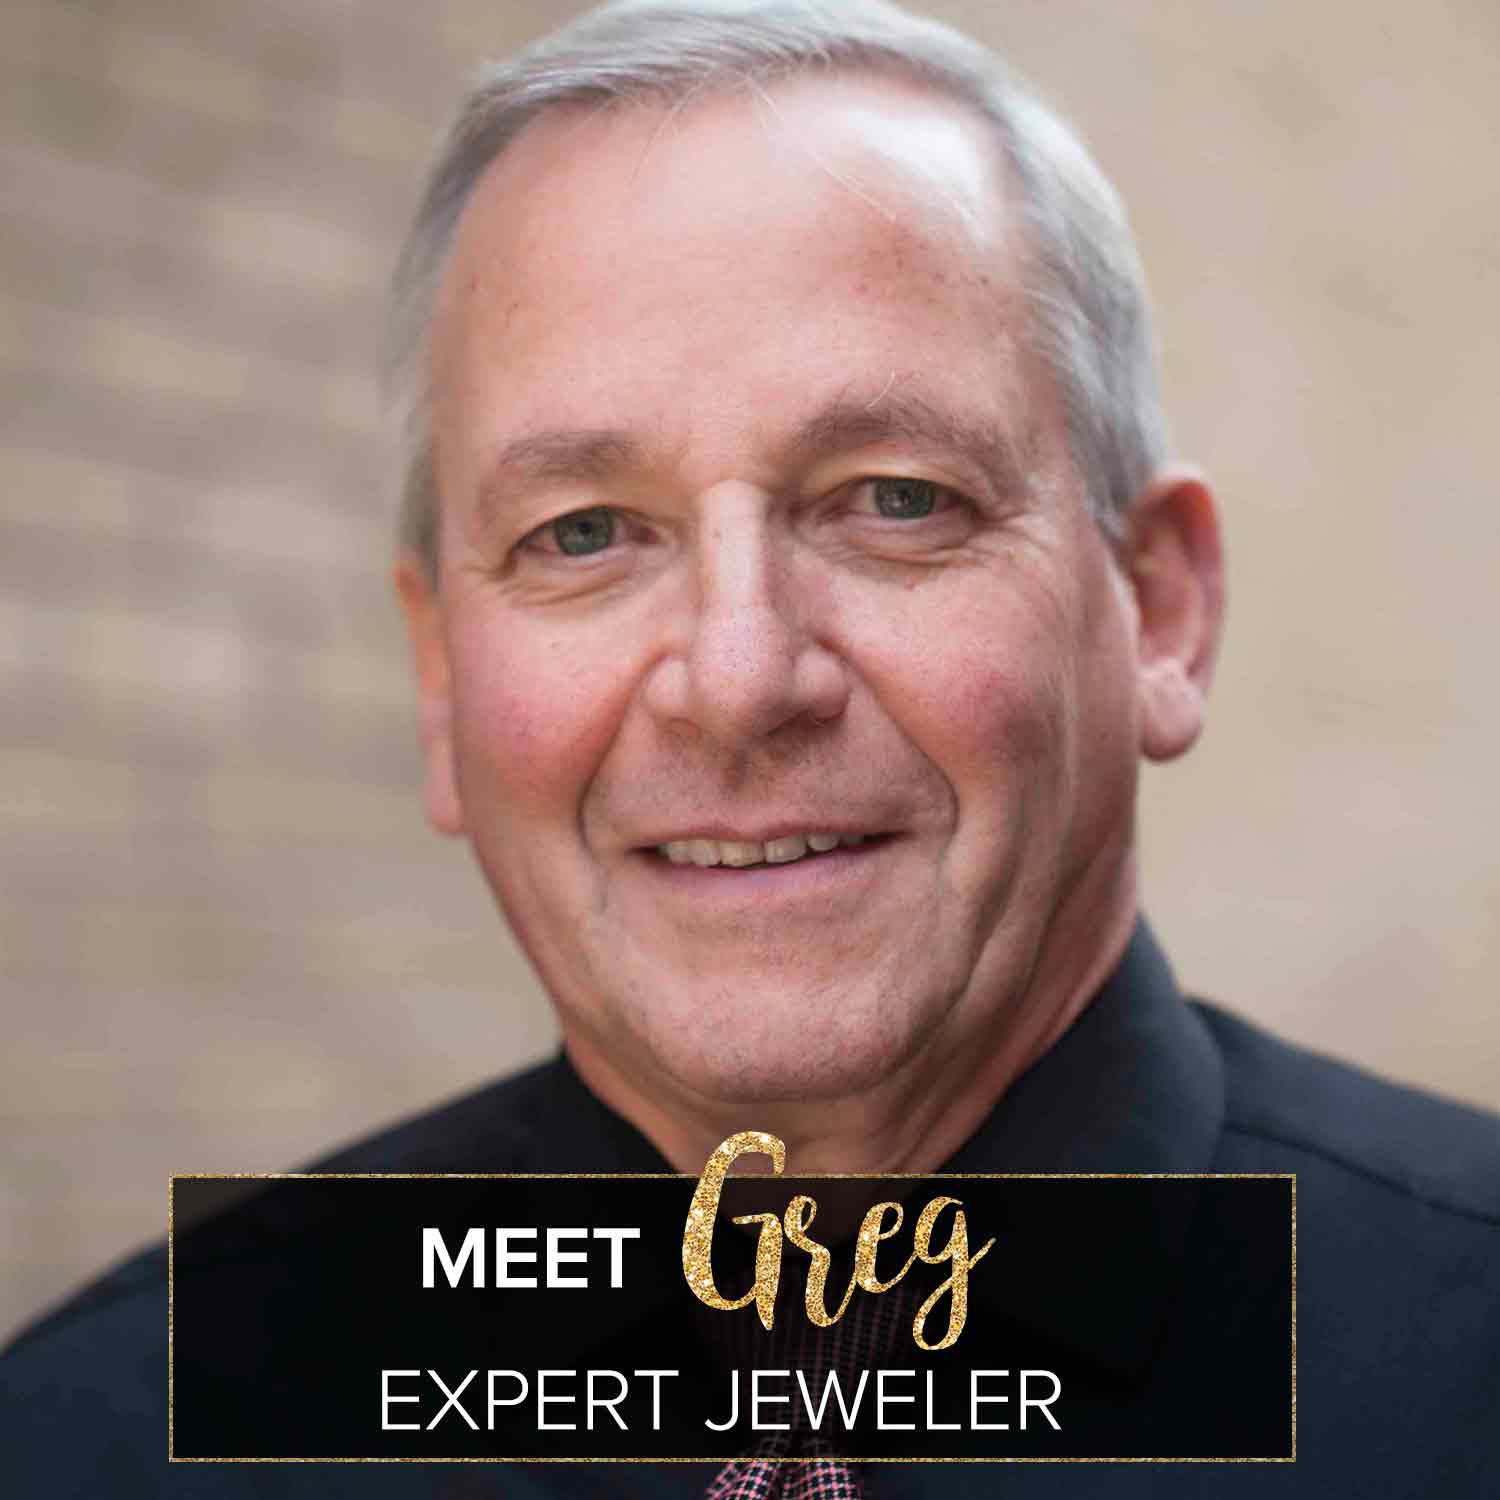 Jeweler Greg from Steven Singer Jewelers